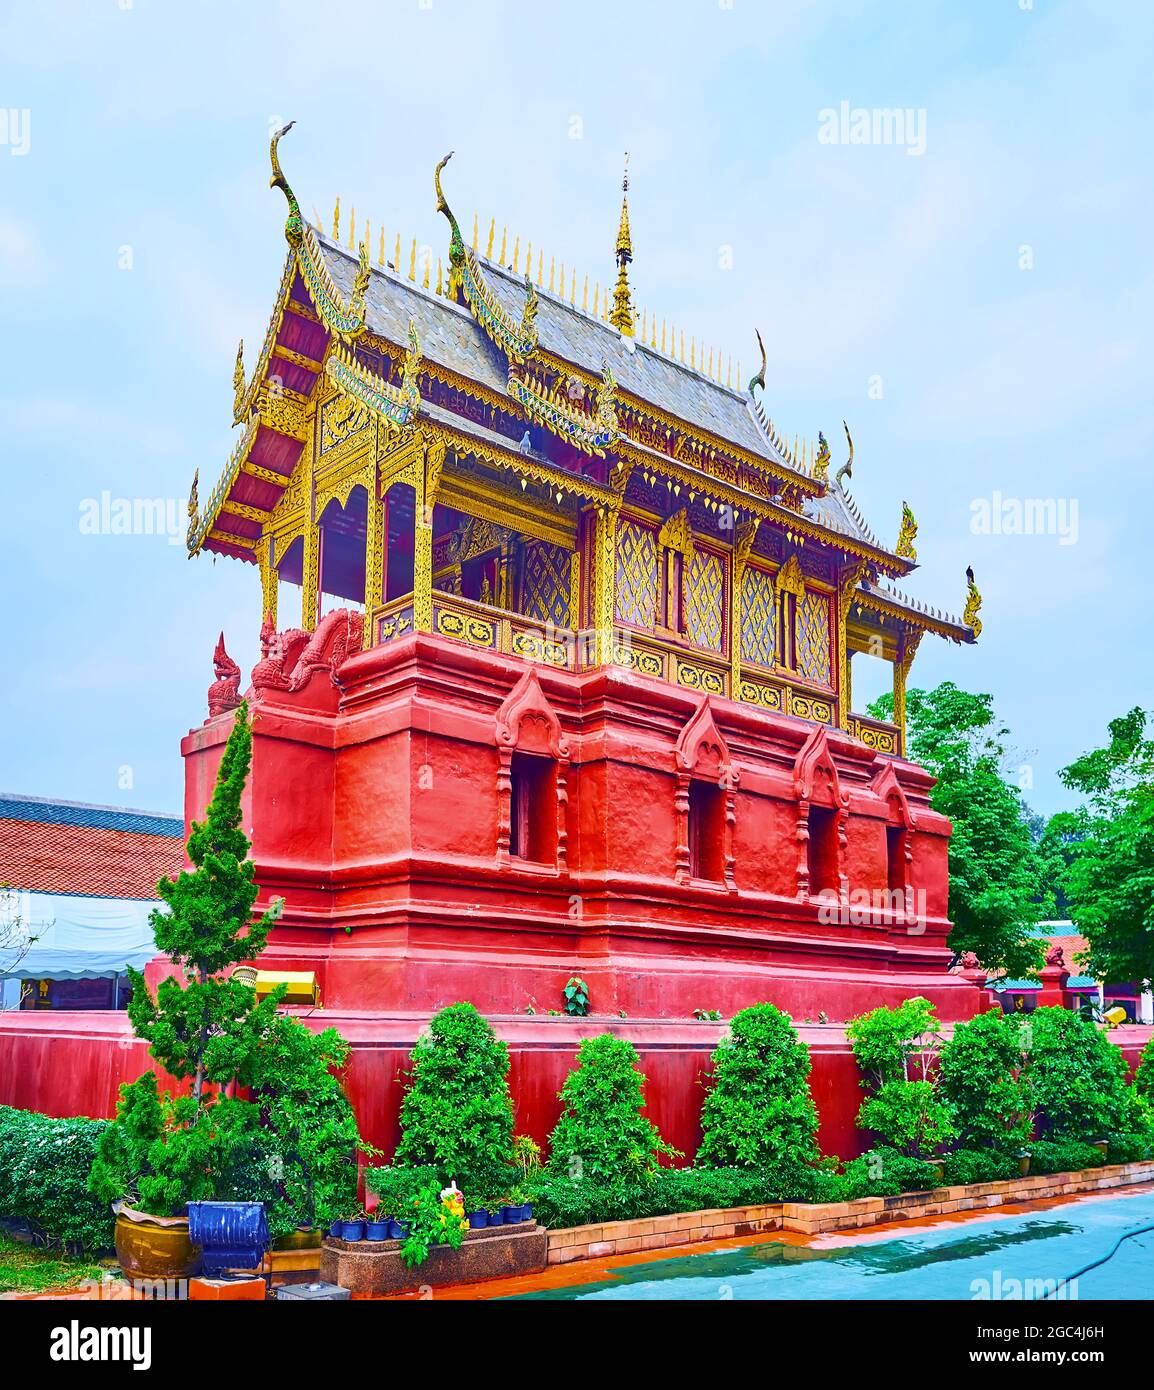 El edificio rojo brillante de la biblioteca budista de Ho Trai con techo de piathe (hastial) y decoraciones talladas ornamentadas, Wat Phra That Hariphunchai Temple, Lamphun, Th Foto de stock